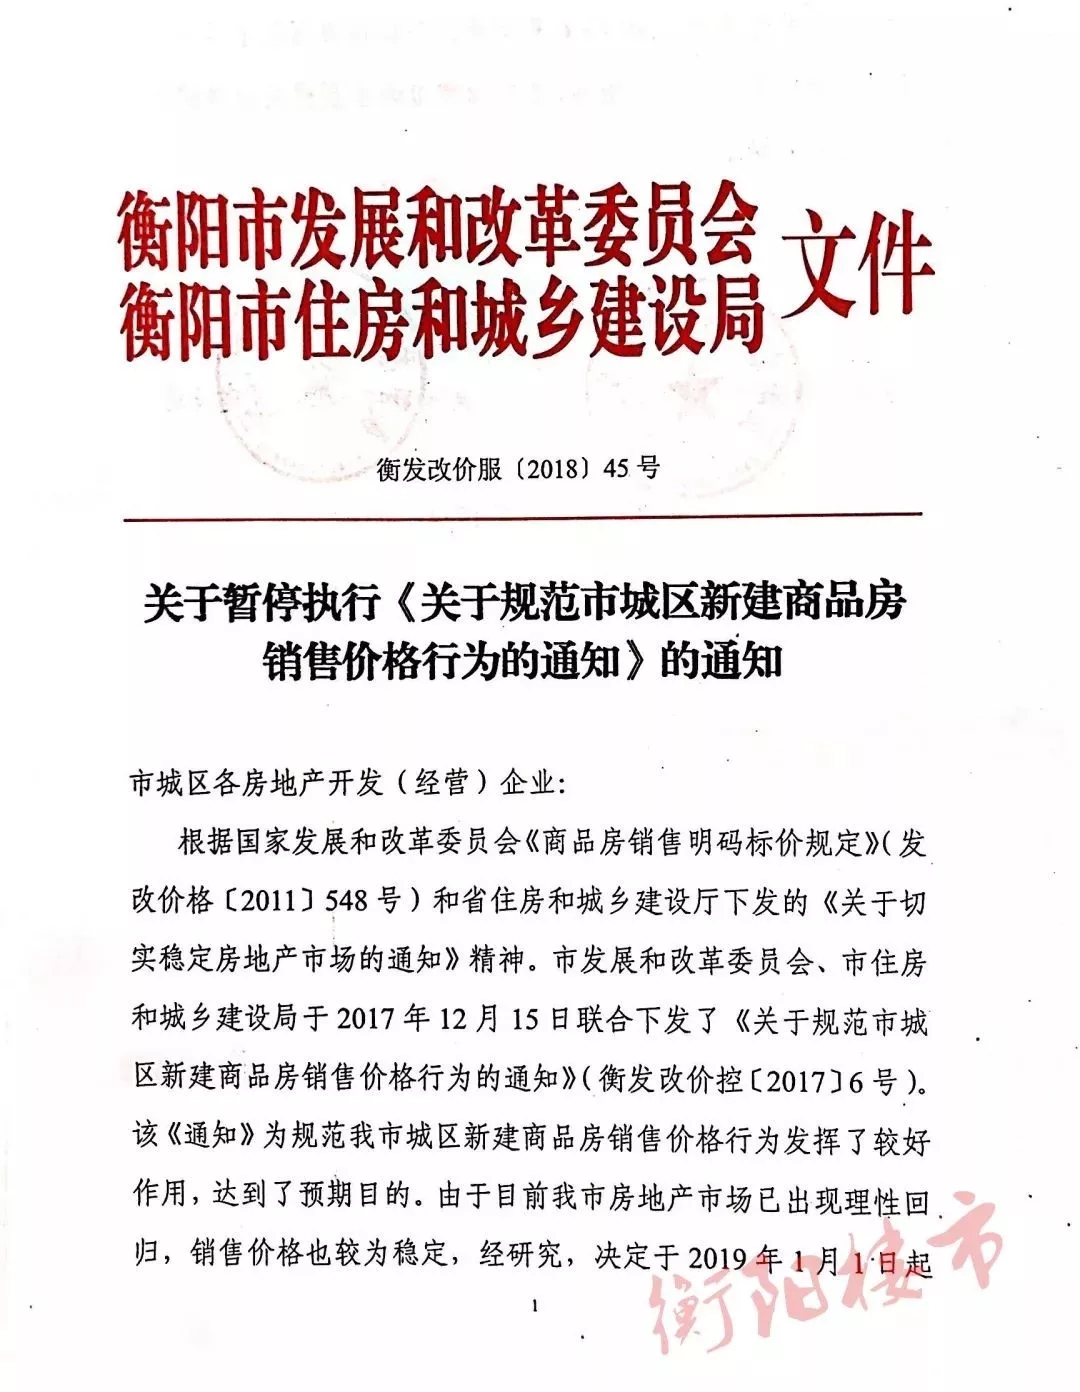 湖南衡阳明年起暂停商品房限价规定，“房产市场已理性回归”